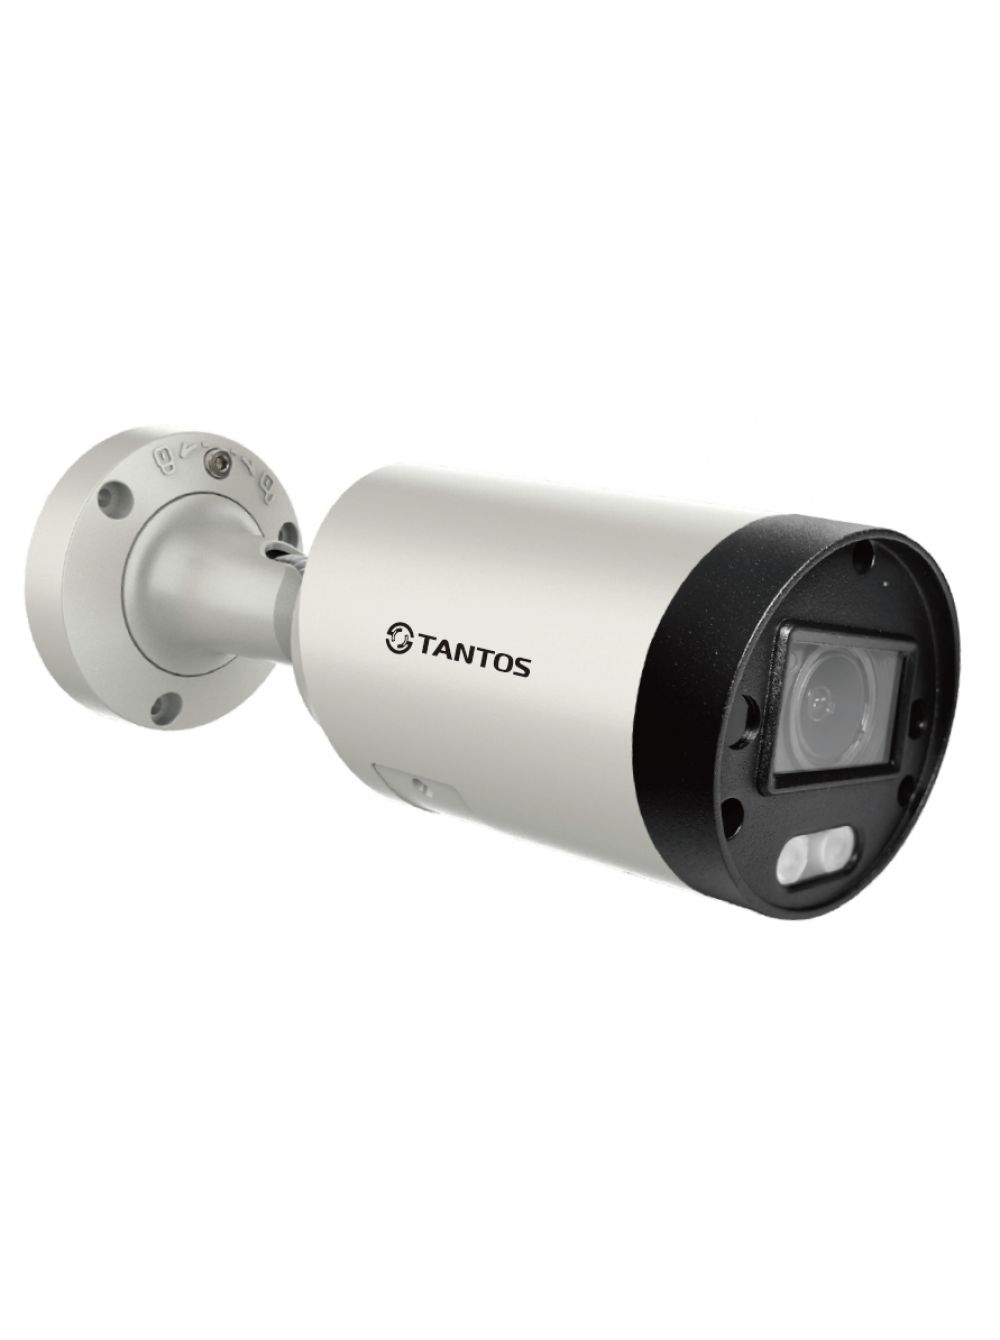 уличная цилиндрическая ip видеокамера 2мп 1 2 8 cmos моторизованный объектив 2 812 мм механический ик фильтр чувствительность 0 008лк f1 7 h 265 IP видеокамера Tantos TSi-Pn853VZ (2.7-13.5 мм) уличная цилиндрическая